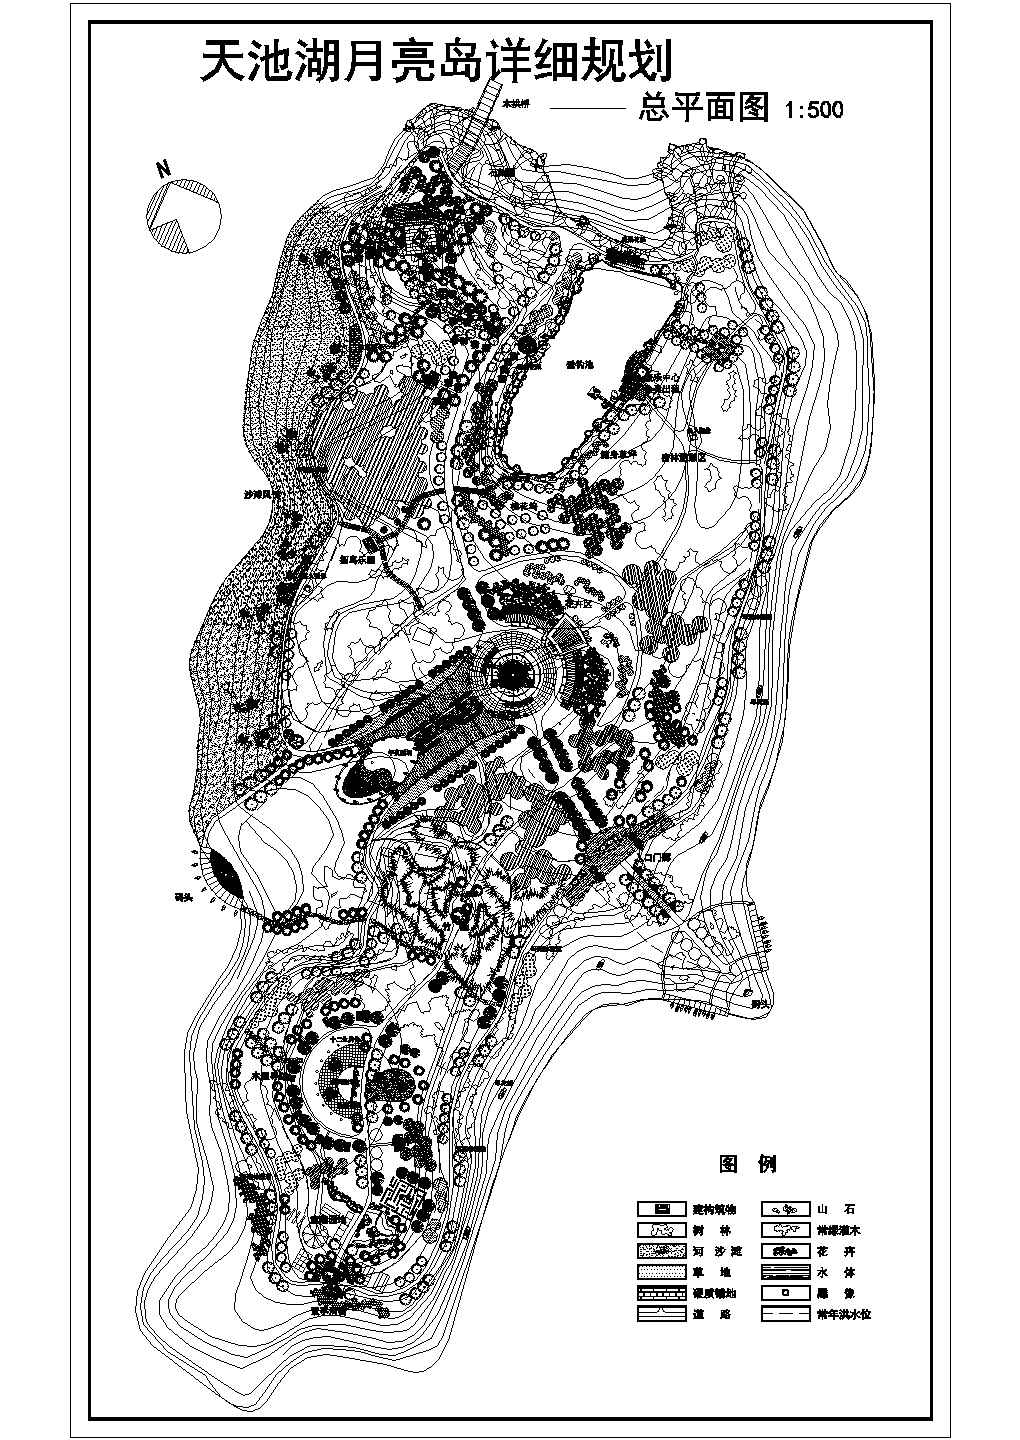 天池湖月亮岛景观规划设计总平面图